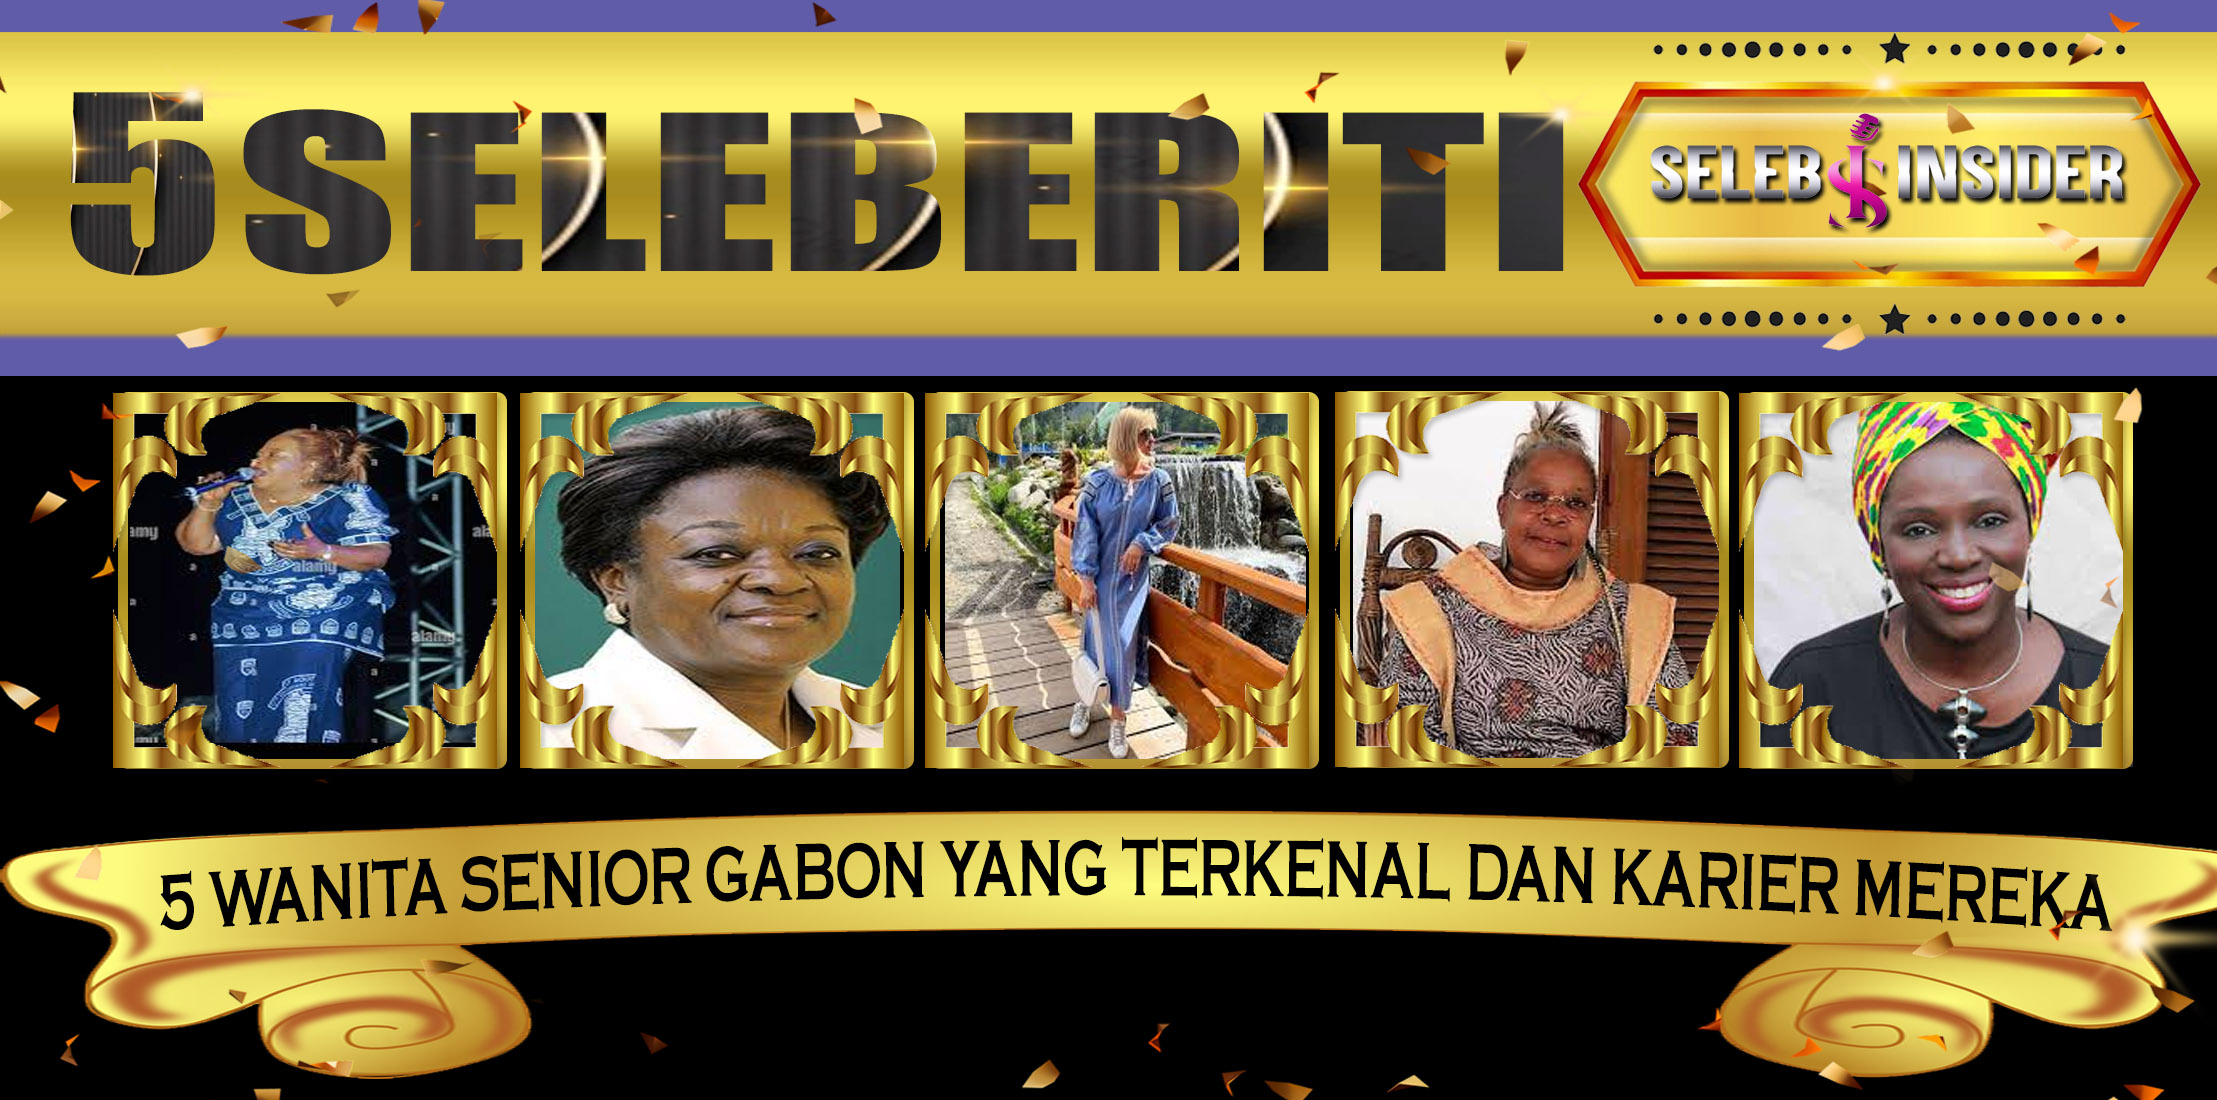 5 Wanita Senior Gabon